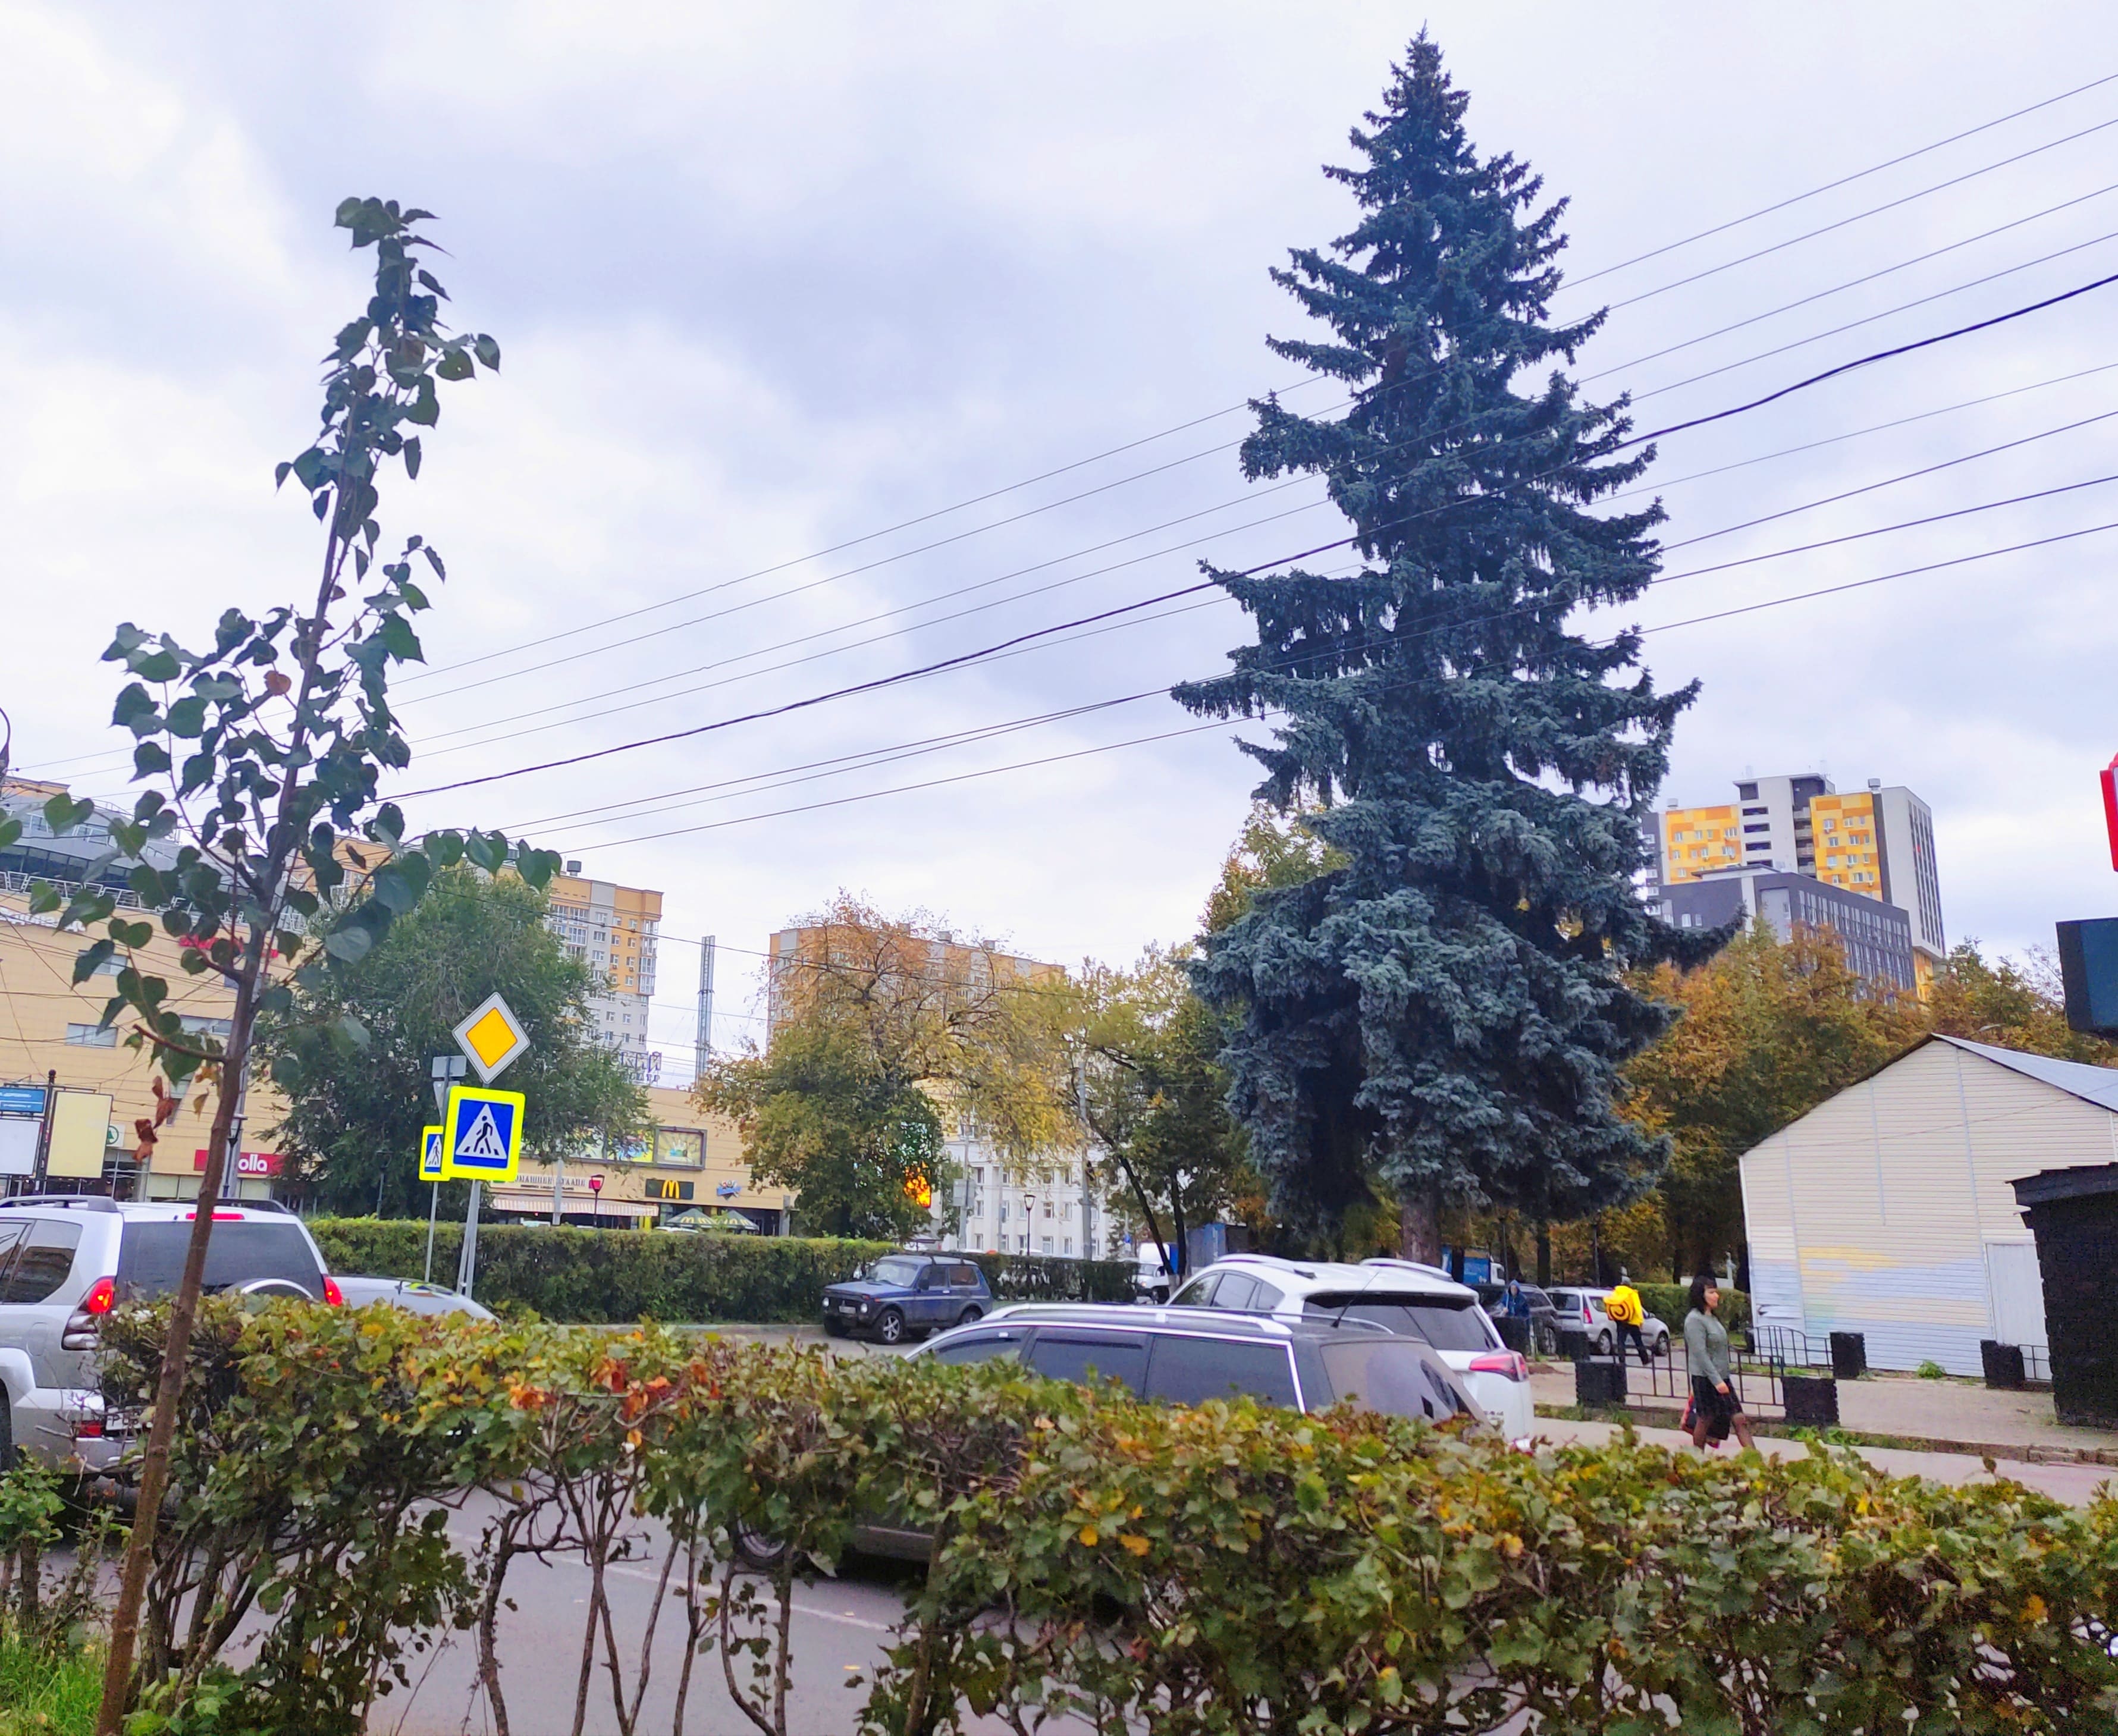 QR-код появится у «живого памятника» в Сормовском районе Нижнего Новгорода - фото 1